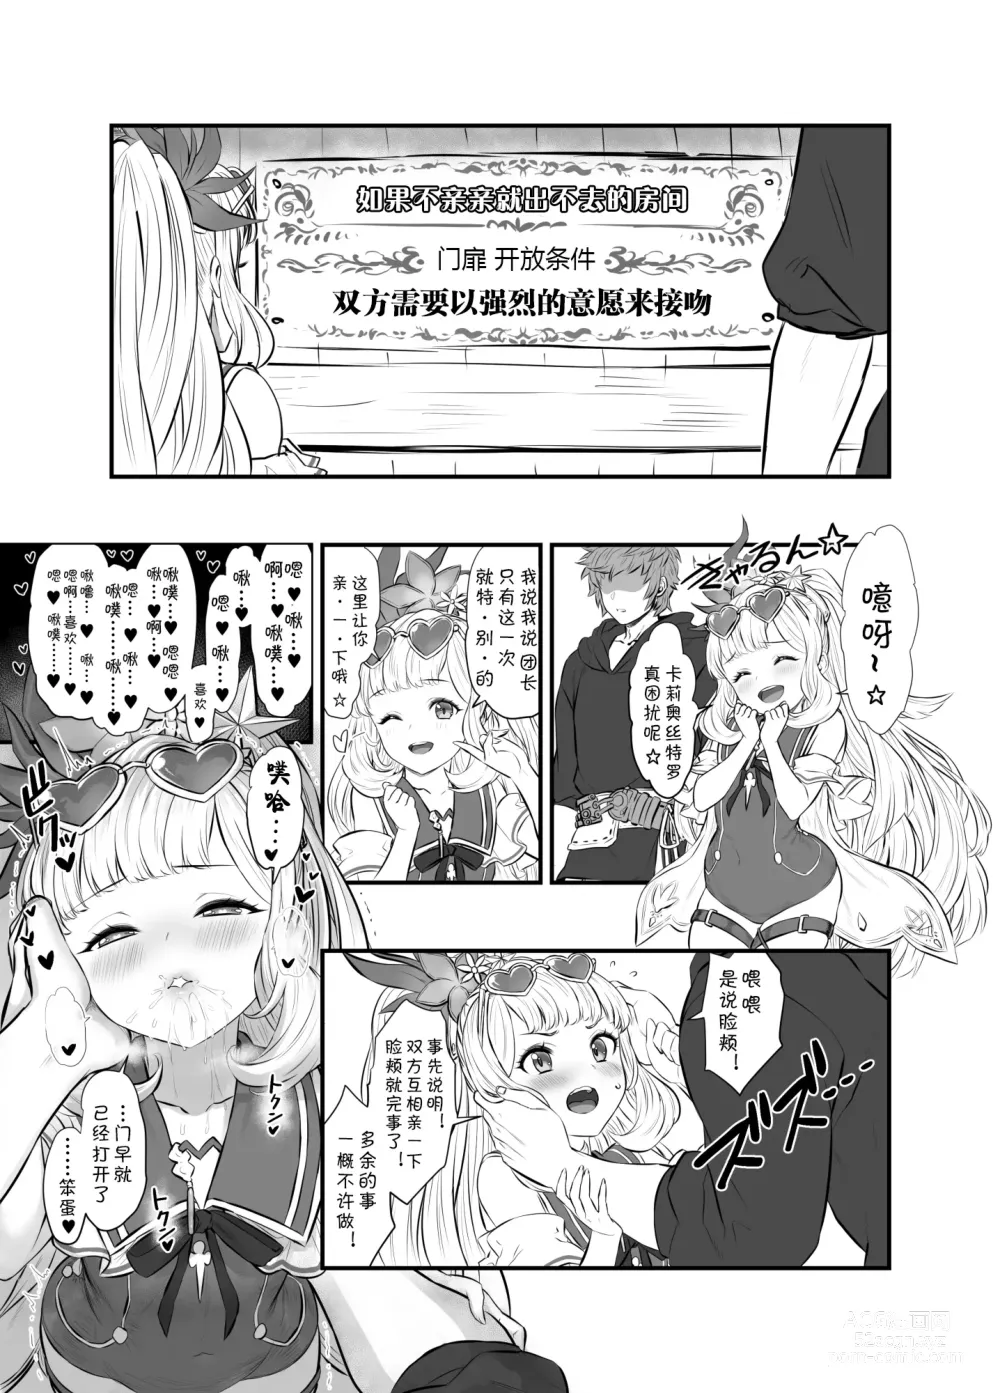 Page 61 of doujinshi 与卡莉奥丝特罗的秘密炼金术